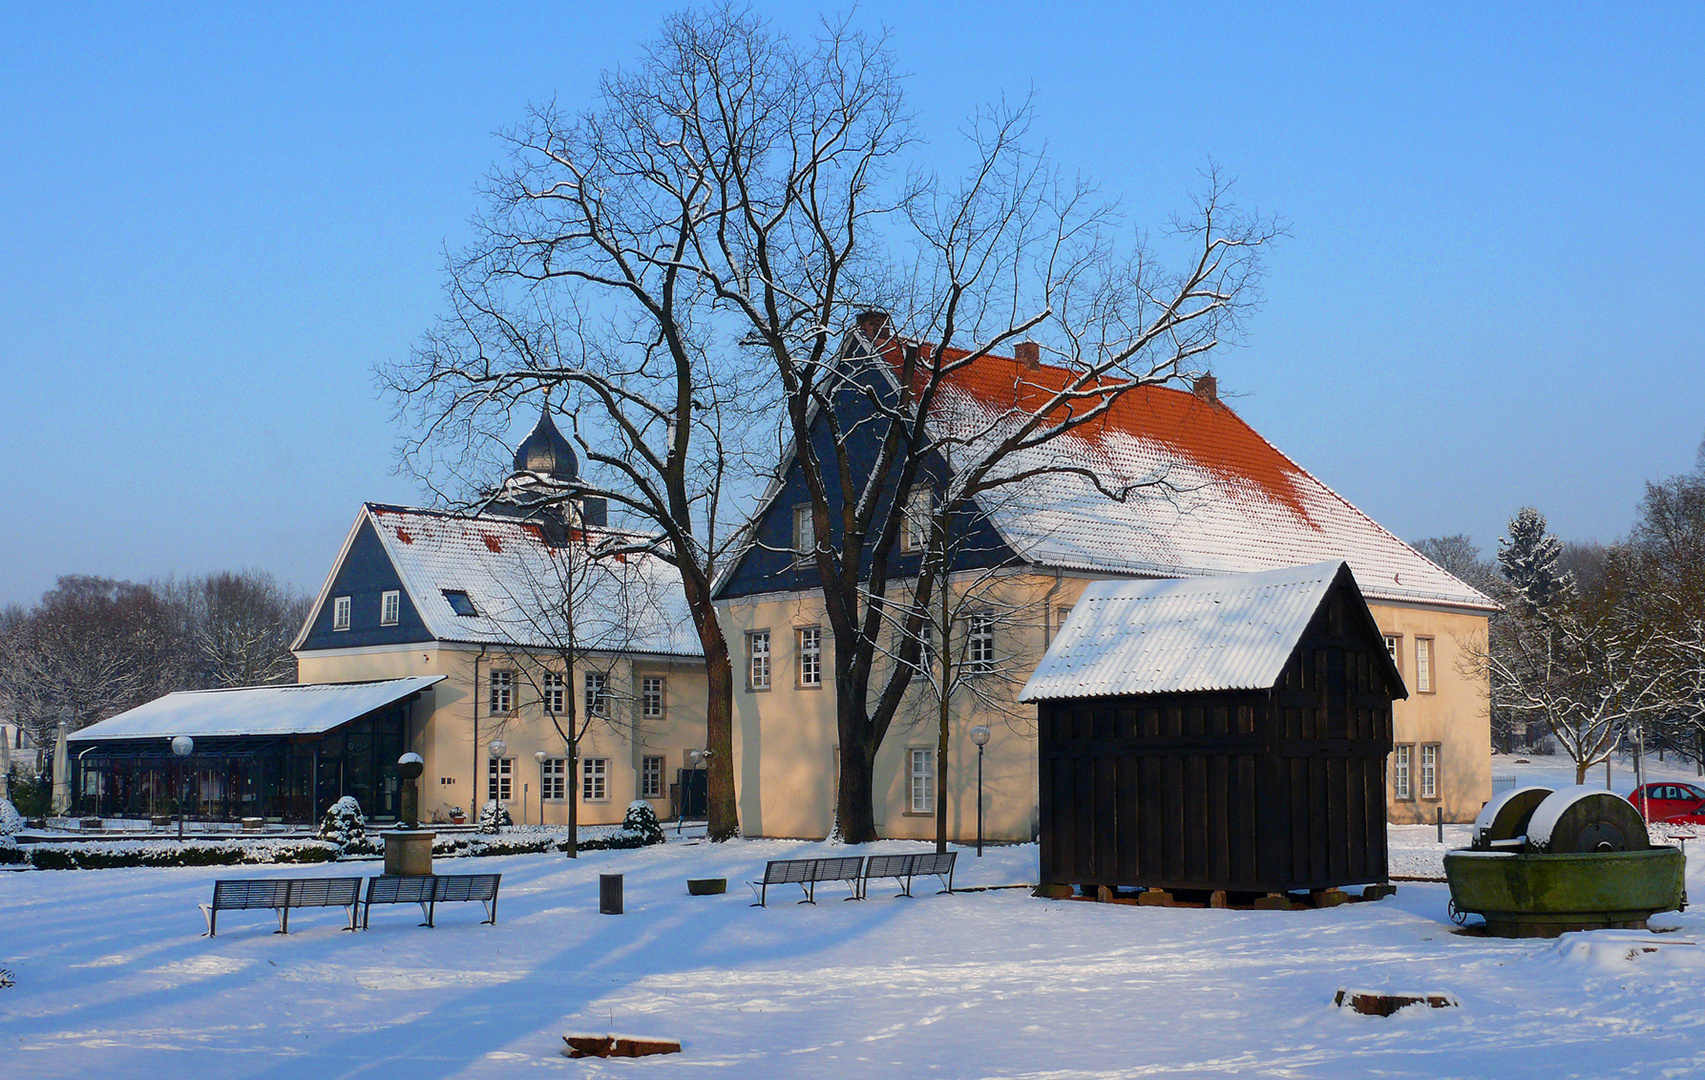 Wintertag am Schloss Martfeld